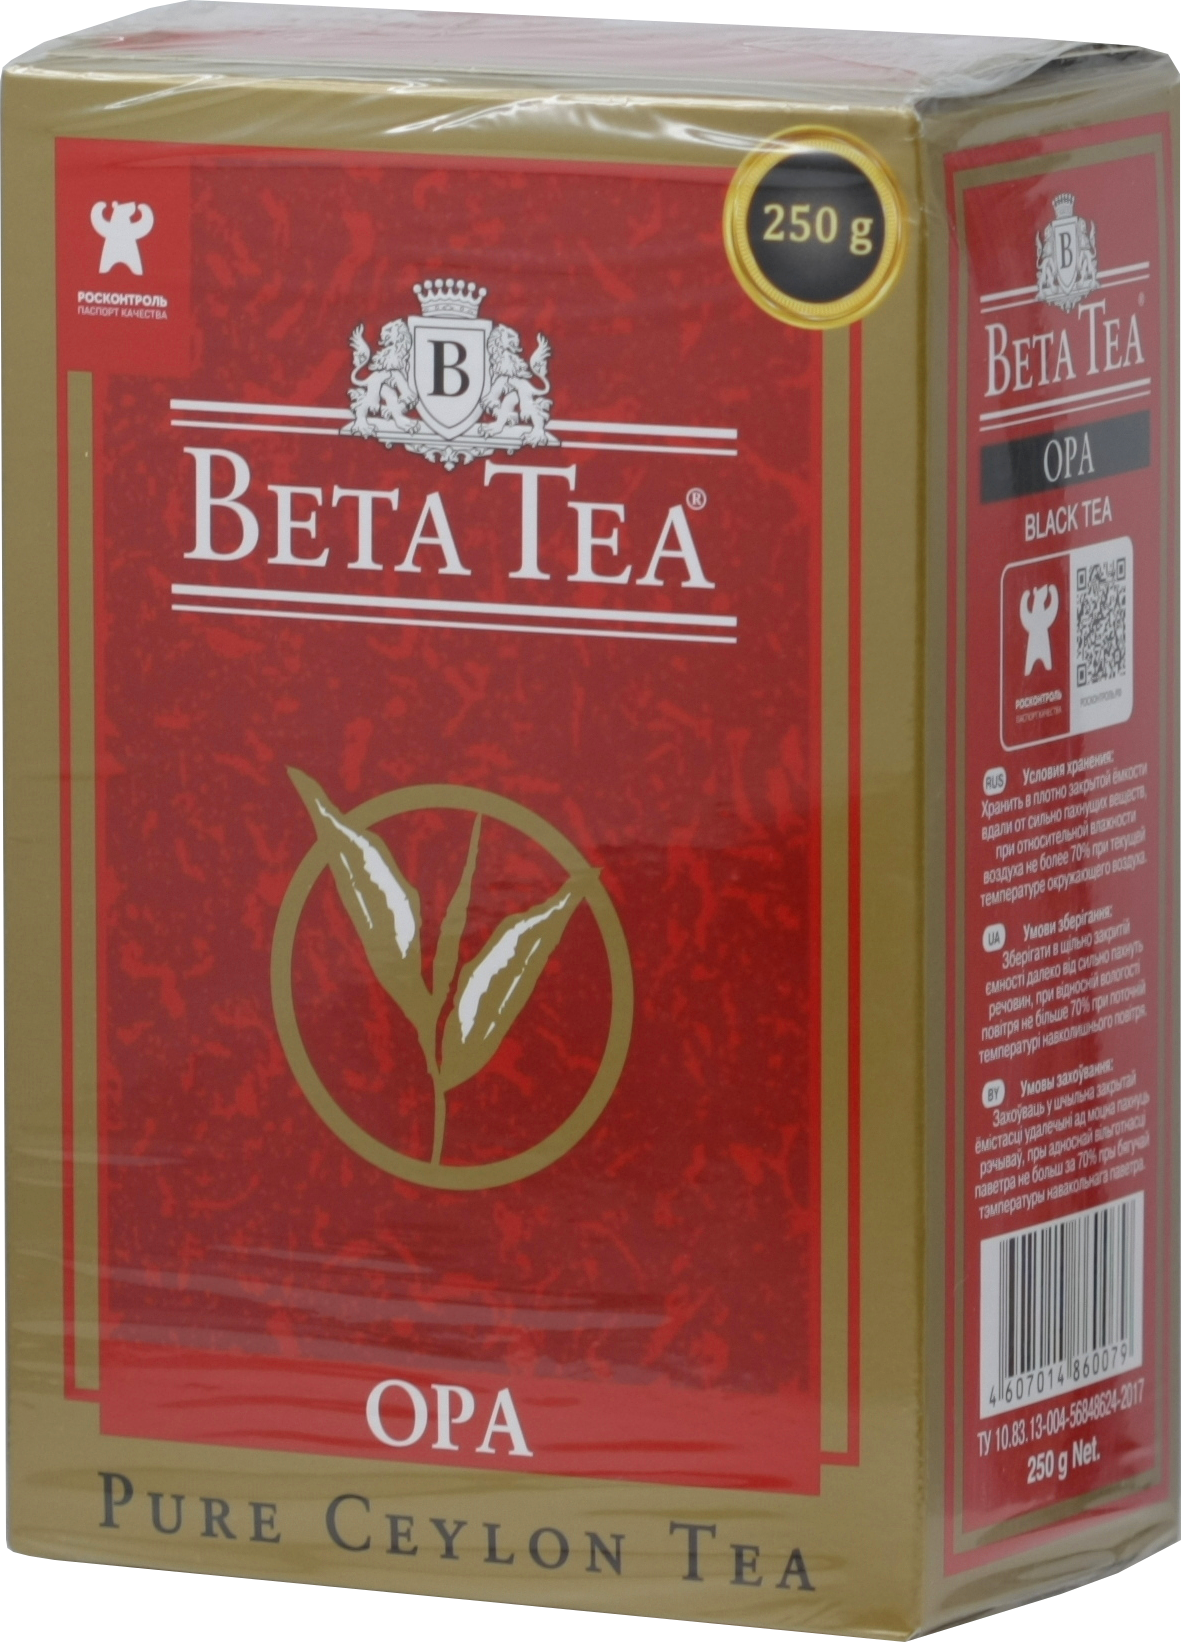 BETA TEA. ОРА черный 250 гр. карт.пачка